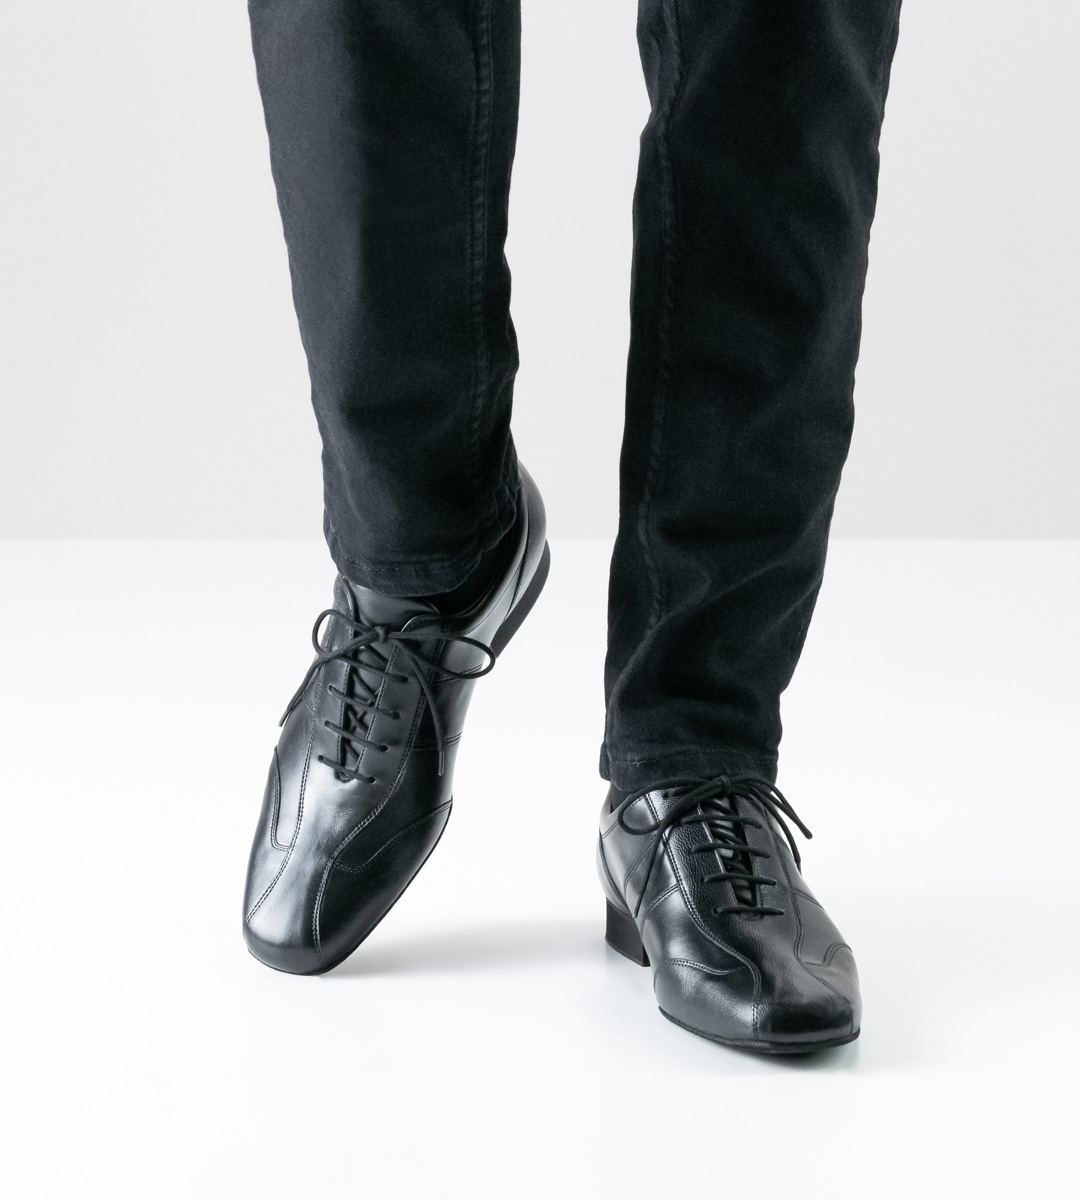 Schwarze Jeans in Kombination mit schwarzem Werner Kern Herrentanzschuh aus Nappa